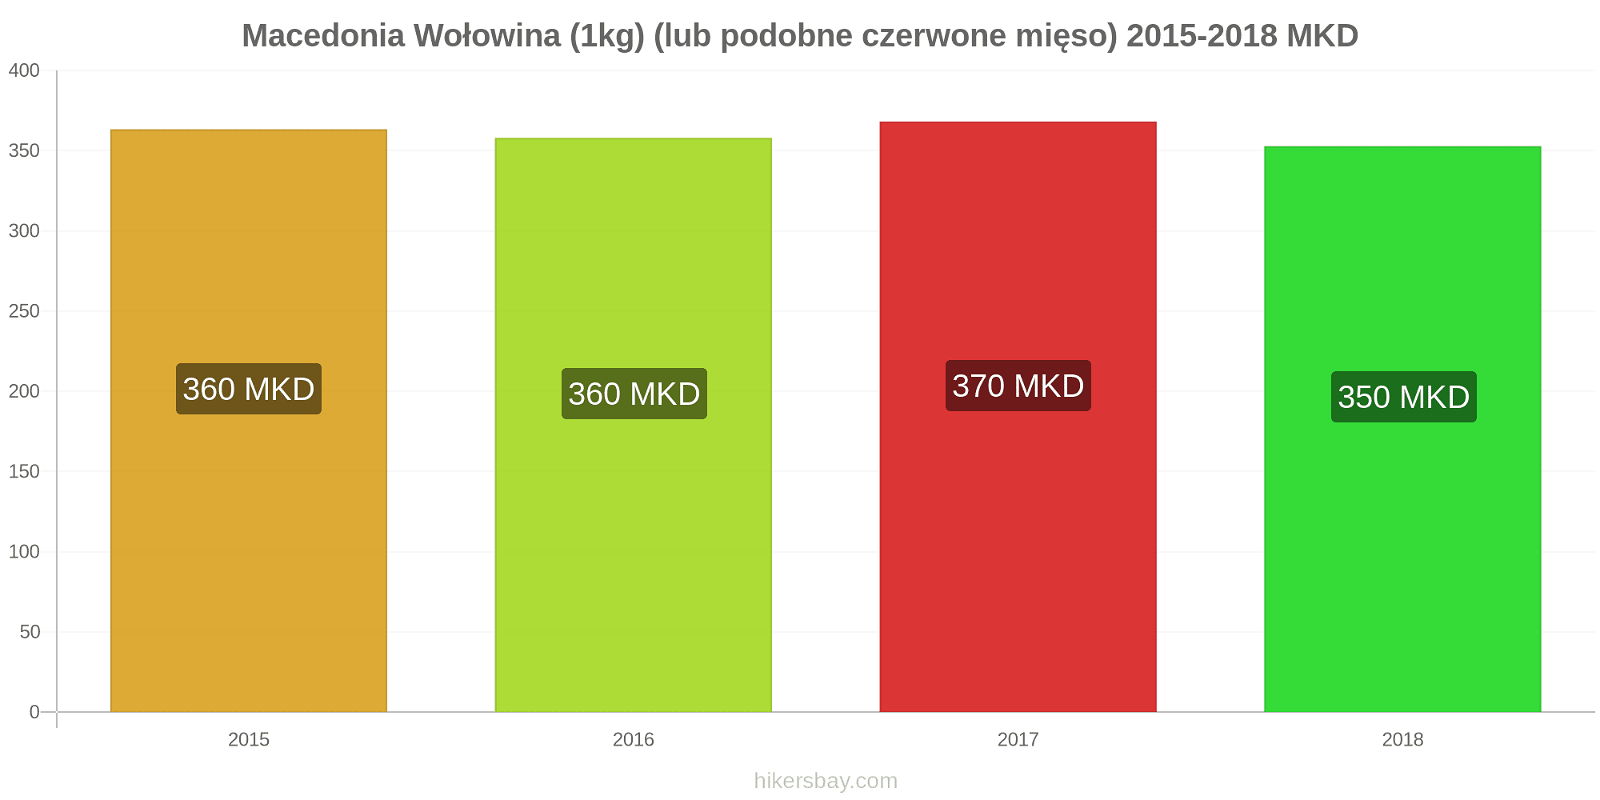 Macedonia zmiany cen Wołowina (1kg) (lub podobne czerwone mięso) hikersbay.com